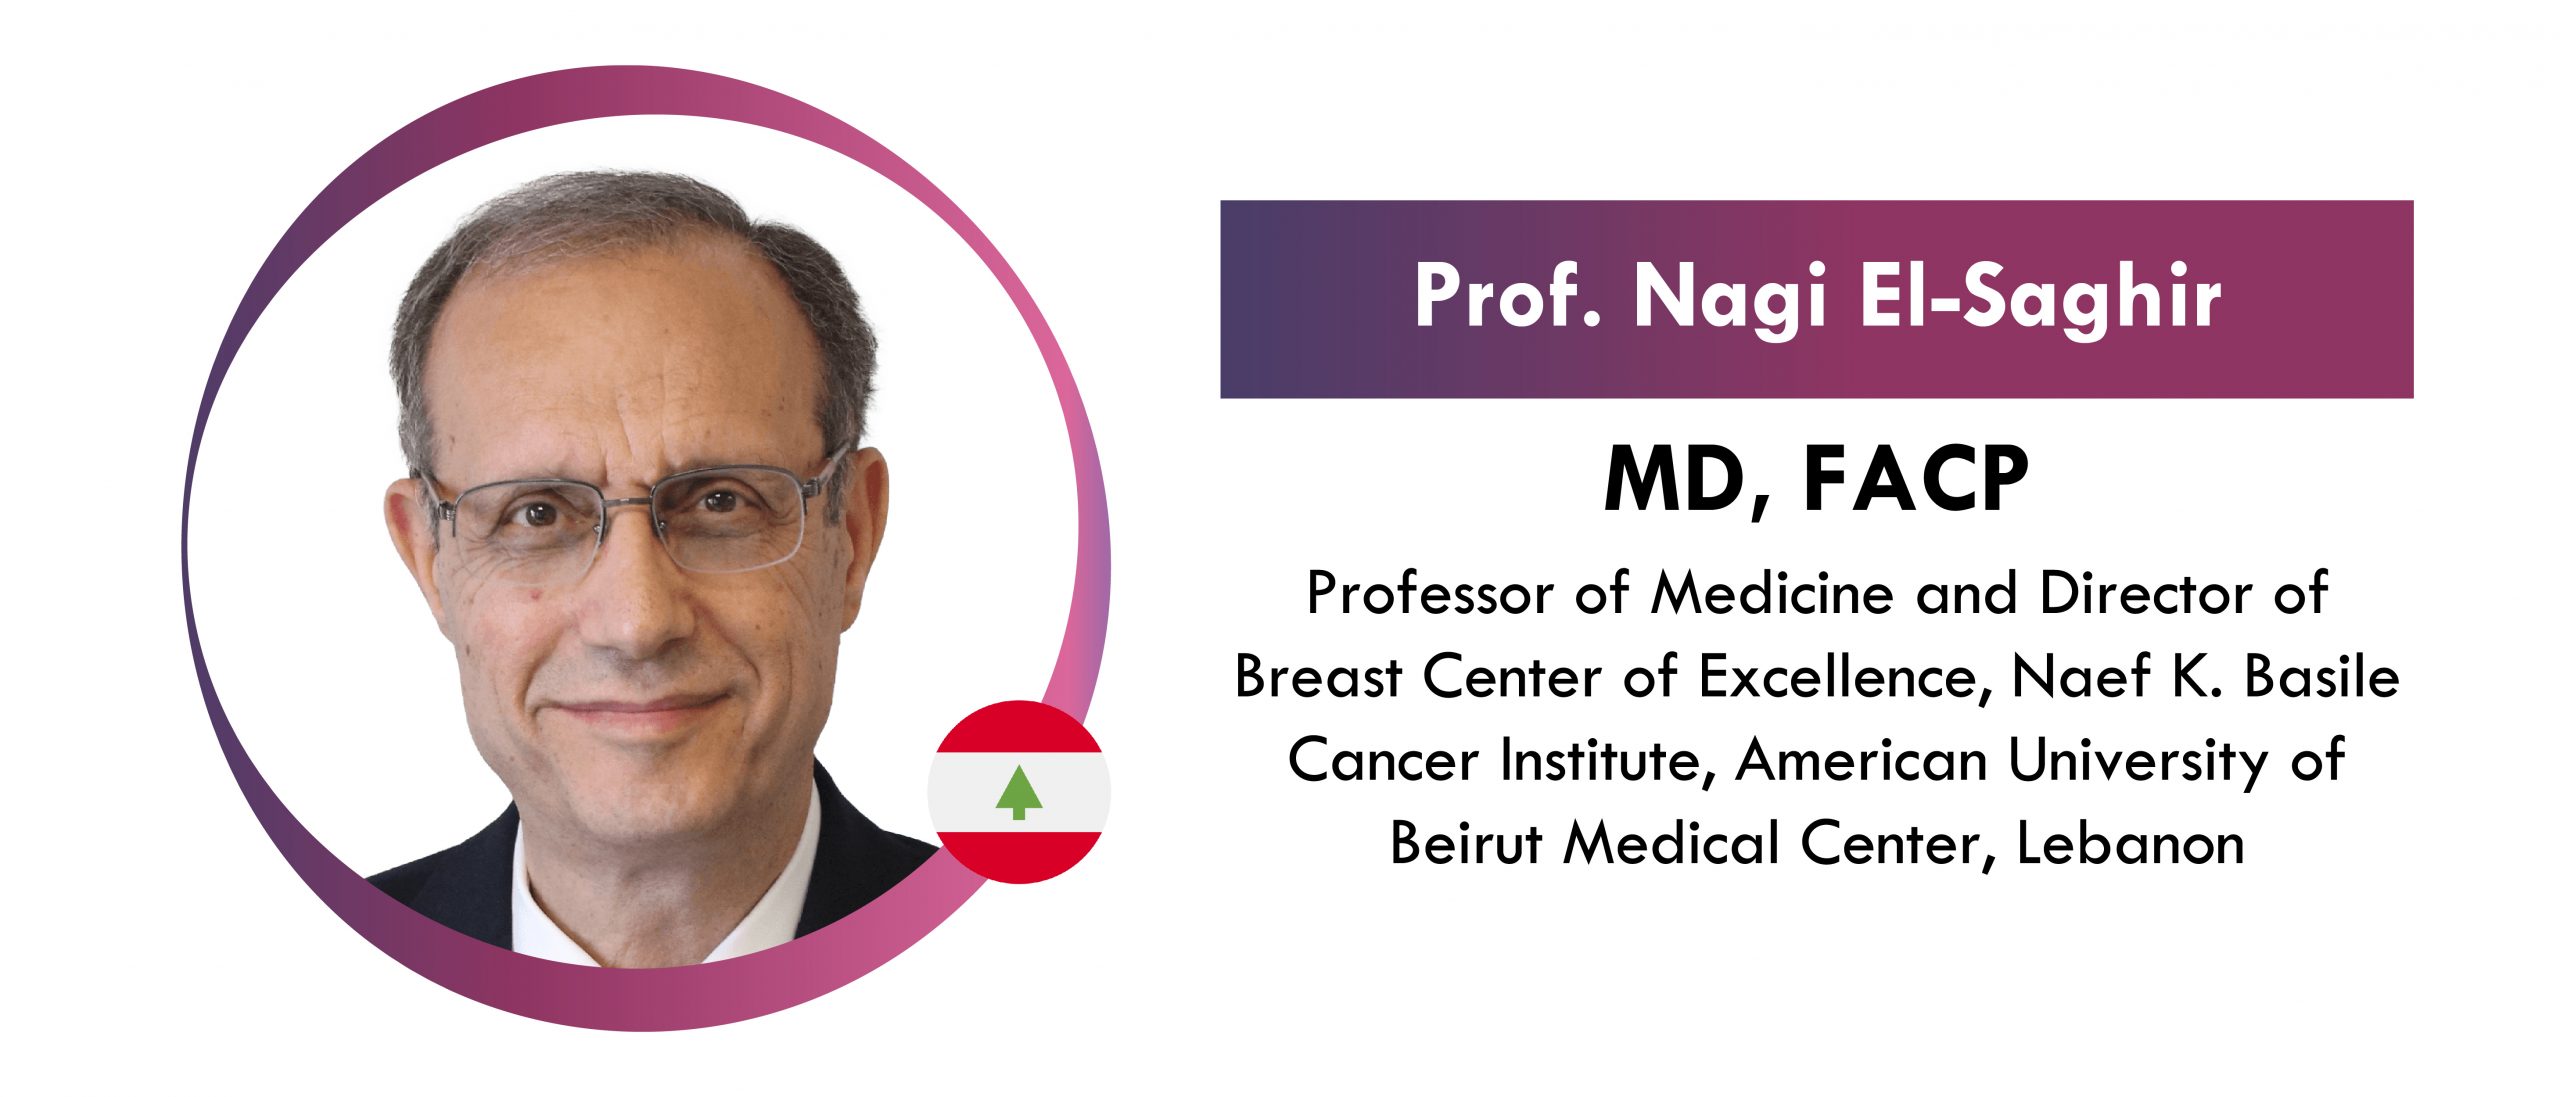 Prof. Nagi El-Saghir